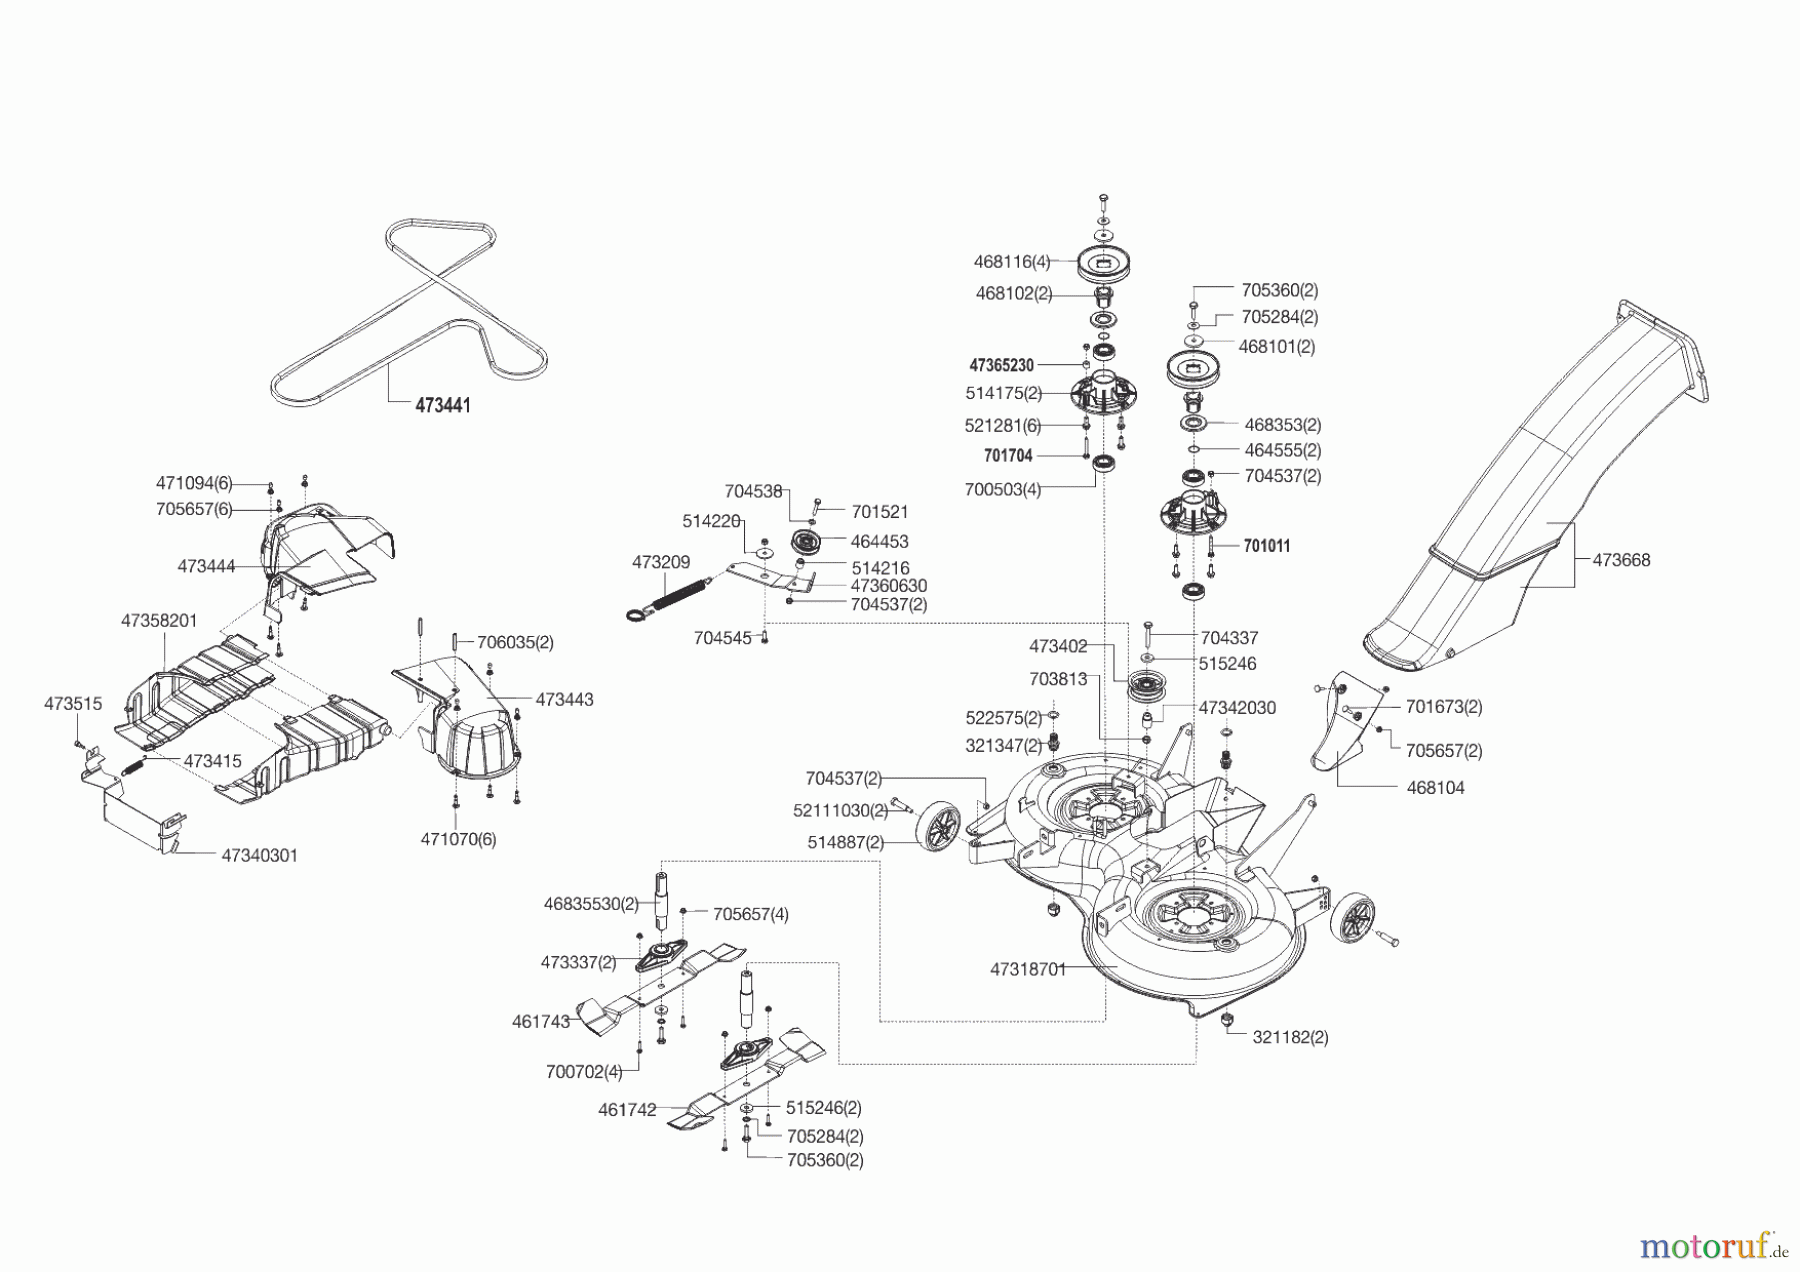  Powerline Gartentechnik Rasentraktor T 16-95.4 HD V2  09/2014 - 05/2016 Seite 6